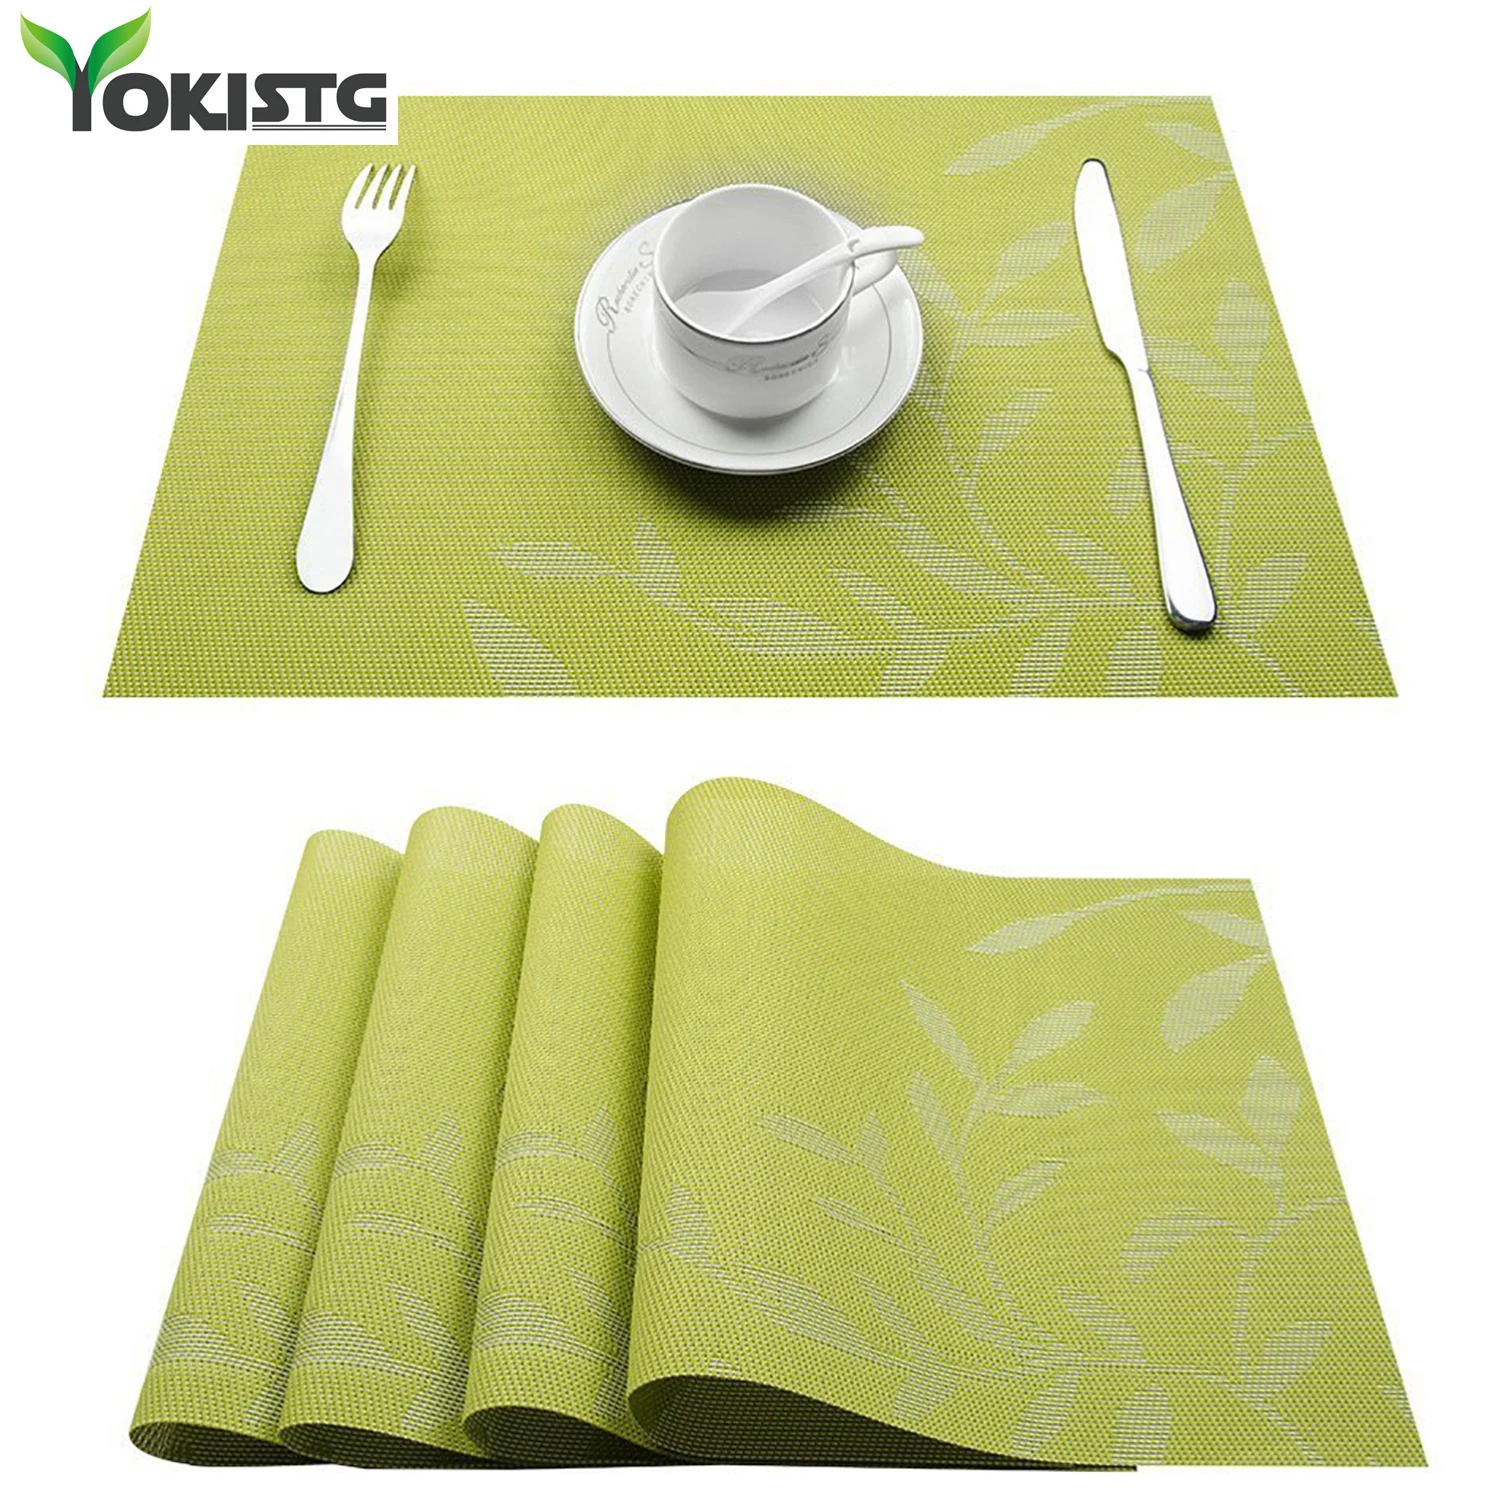 YokiSTG ПВХ листья шаблон квадратные салфетки для обеденного места коврик в кухонные принадлежности посуда чашки вина коврик